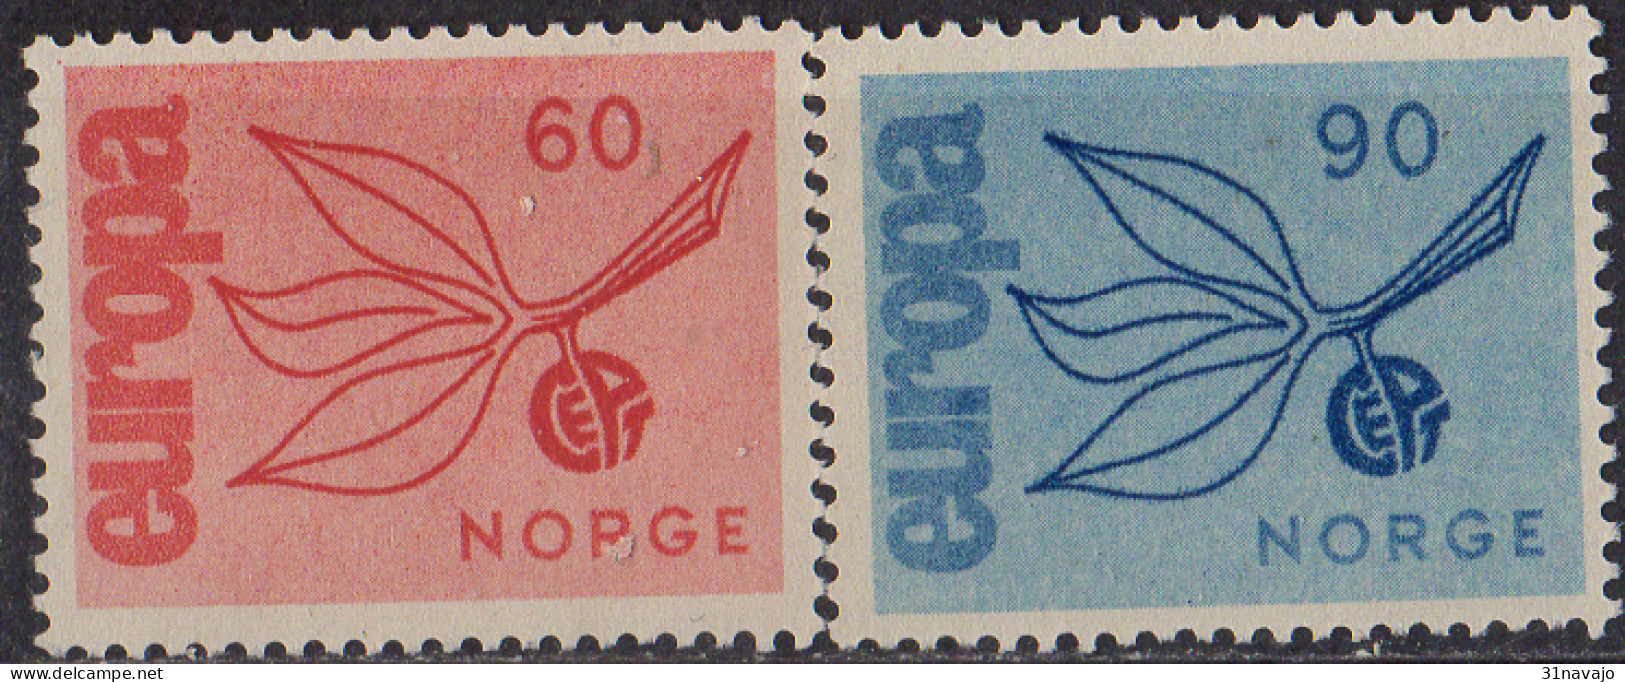 NORVEGE - Europa CEPT 1965 - Ungebraucht